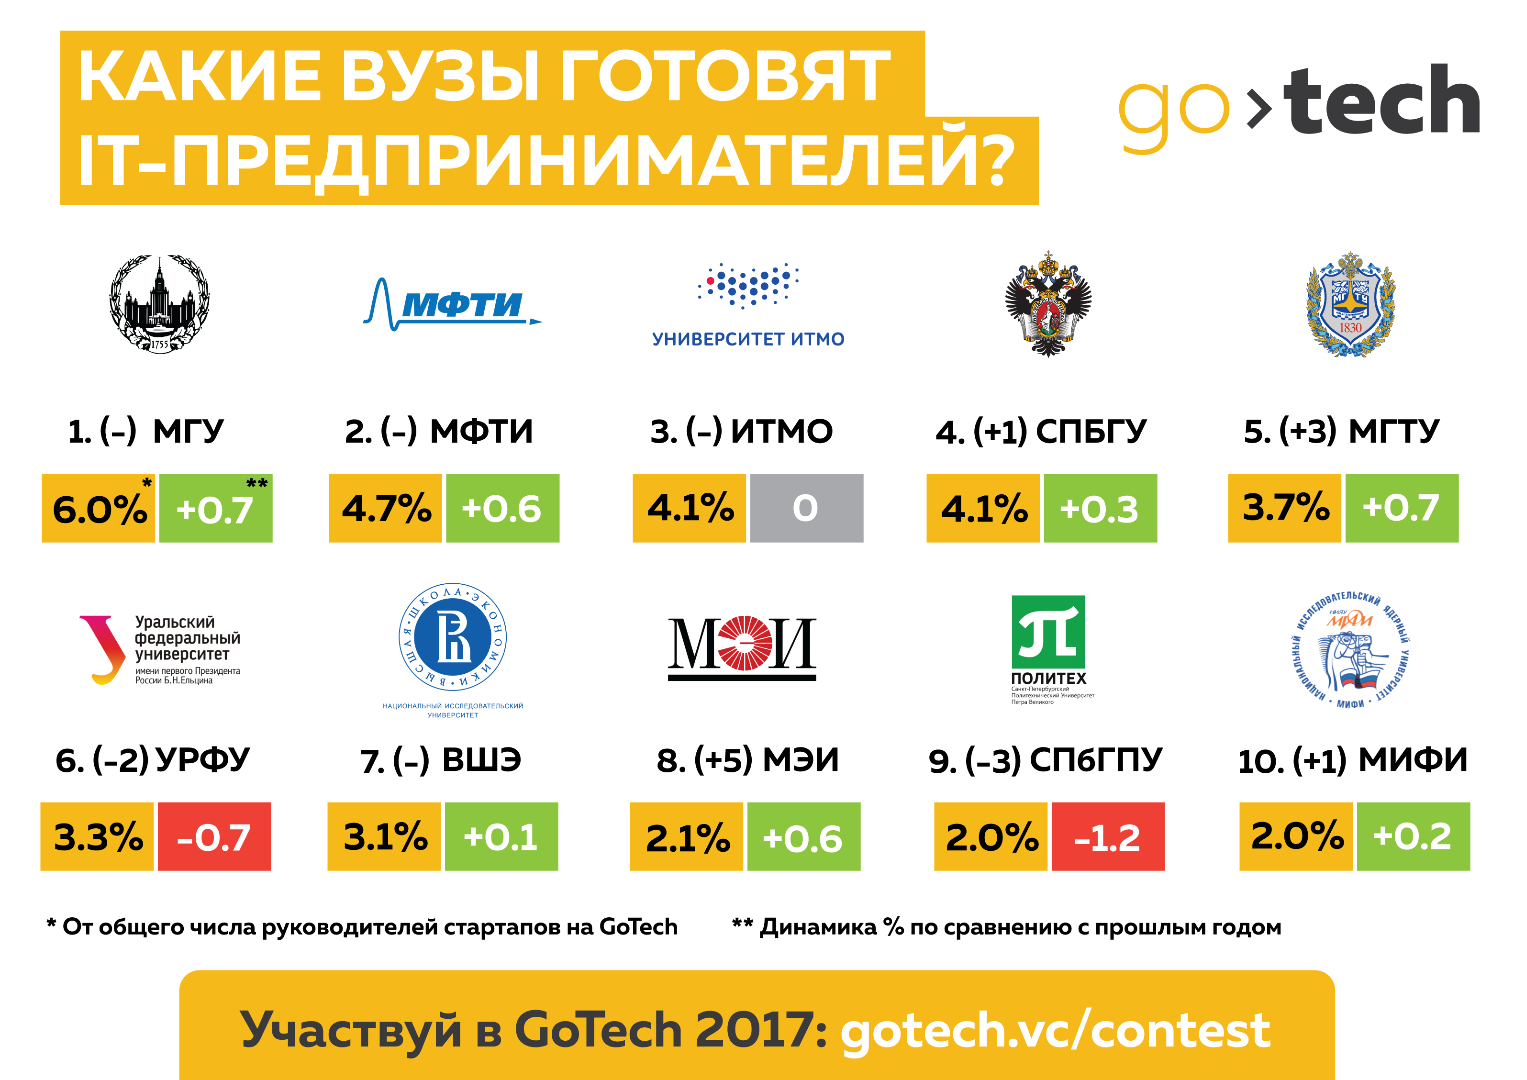 Какие вузы в России готовят больше всего ИТ-предпринимателей? Часть вторая